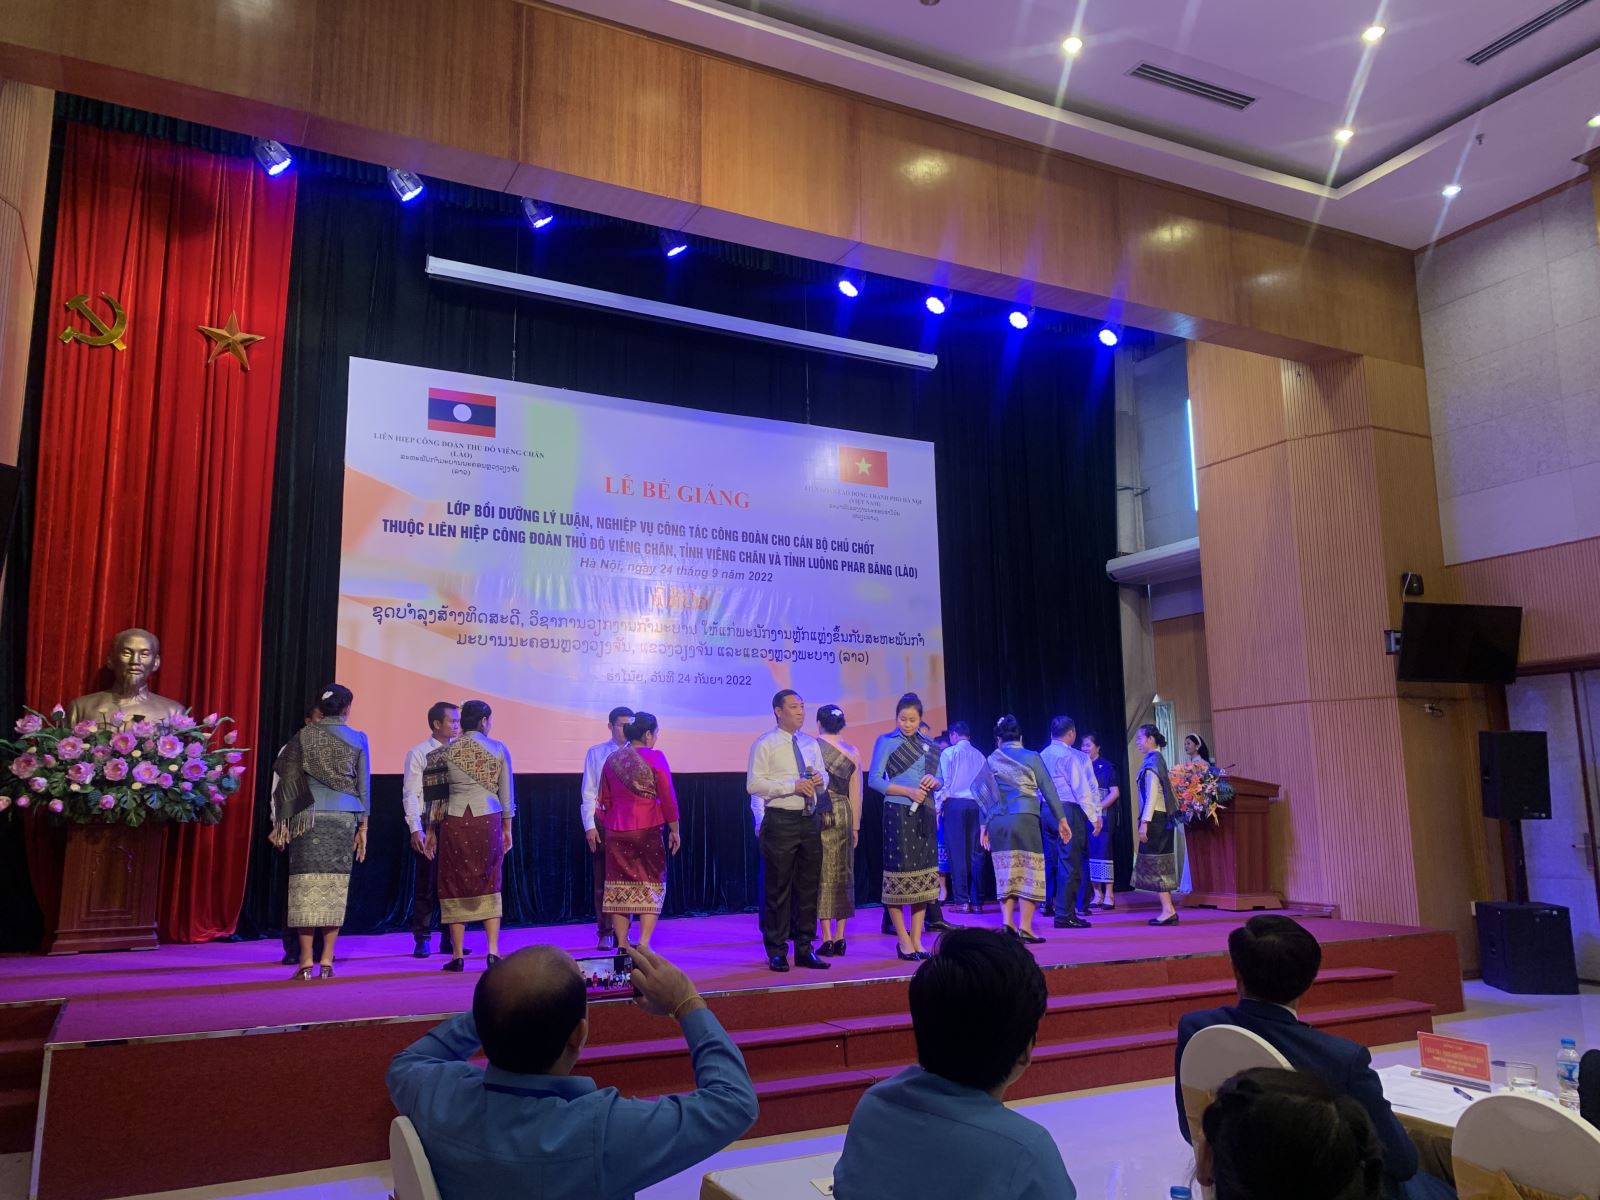  Lễ bế giảng Lớp Bồi dưỡng lý luận, nghiệp vụ công tác công đoàn cho Cán bộ chủ chốt thuộc Liên hiệp Công đoàn thủ đô Viêng Chăn, tỉnh Viêng Chăn và tỉnh Luông Phar Băng (Lào) 